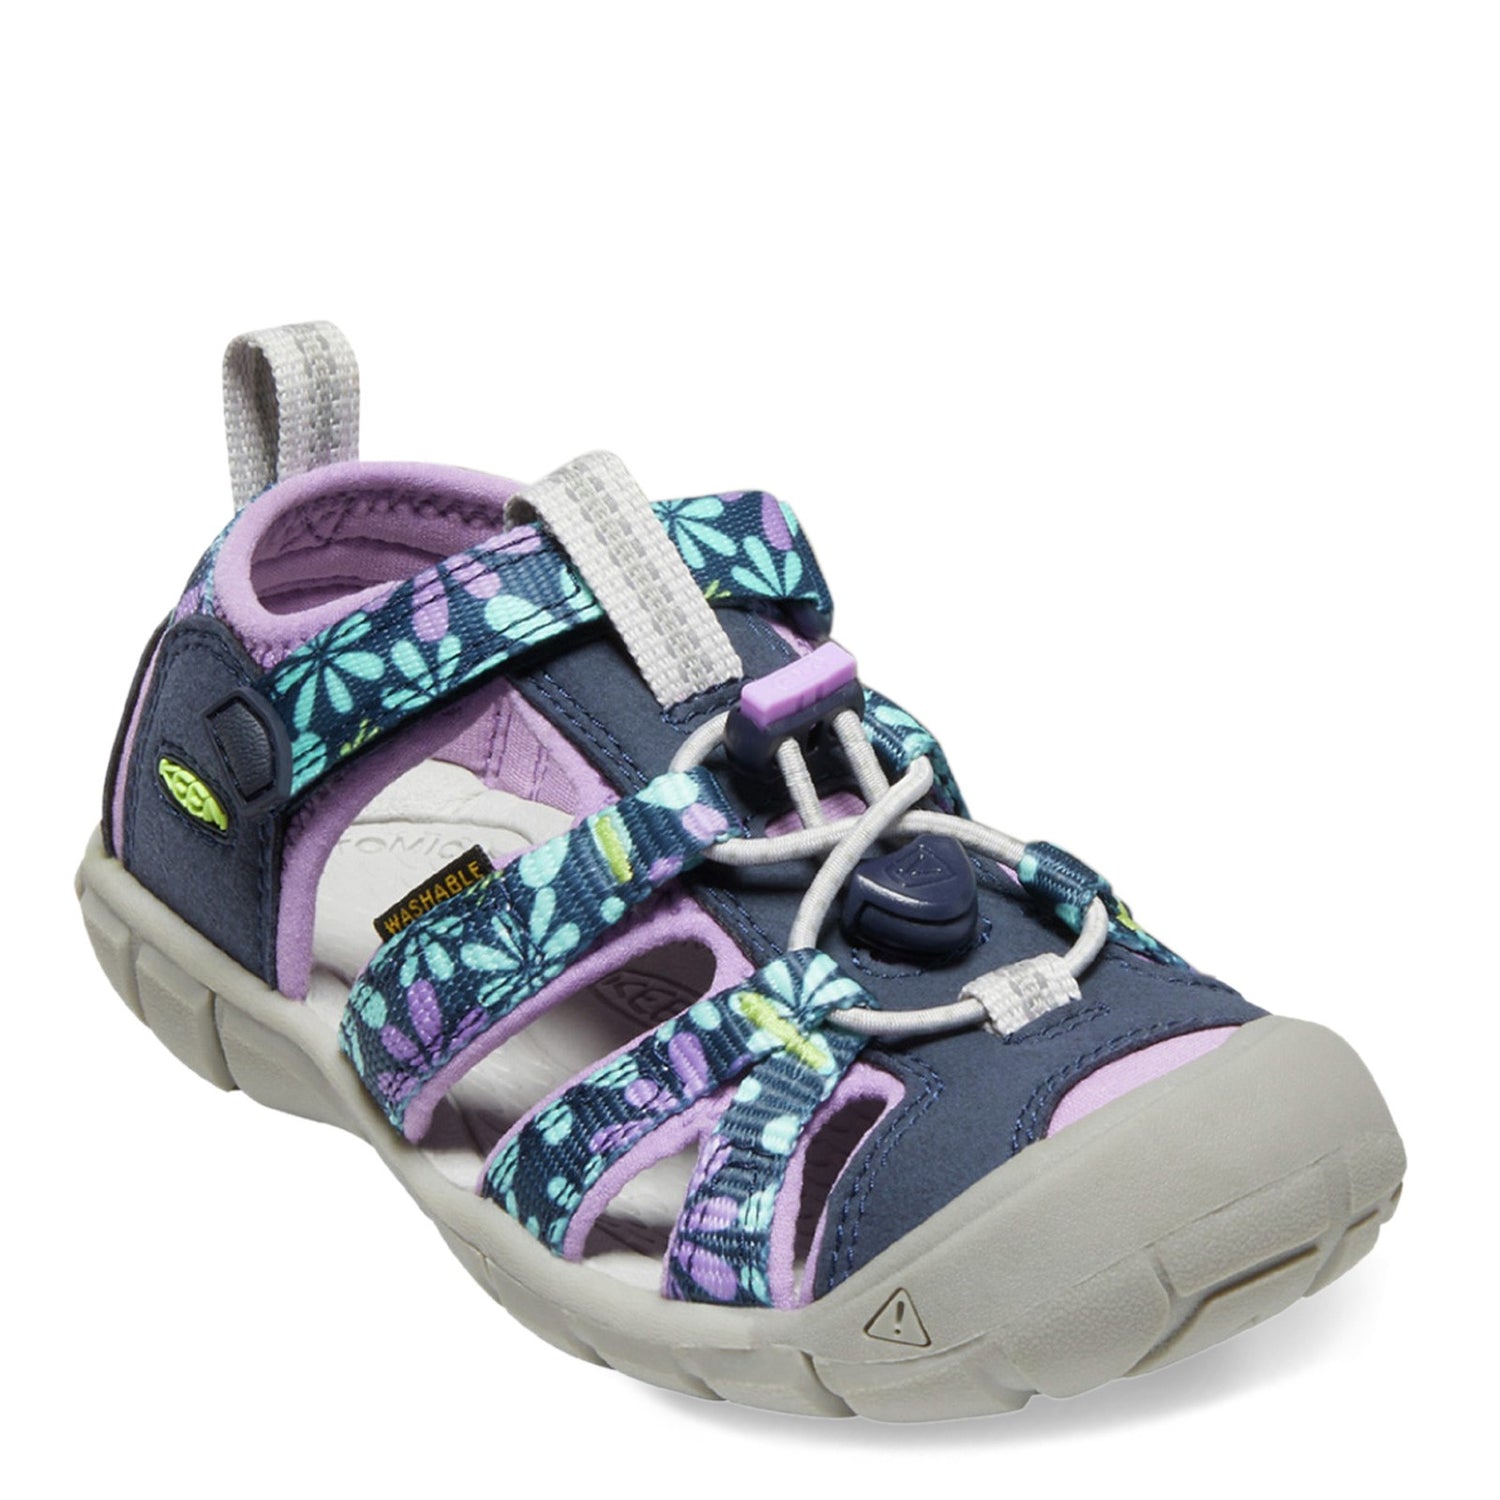 Peltz Shoes  Girl's Keen Seacamp II CNX Sandal - Toddler & Little Kid Black Iris/African Violet 1025136